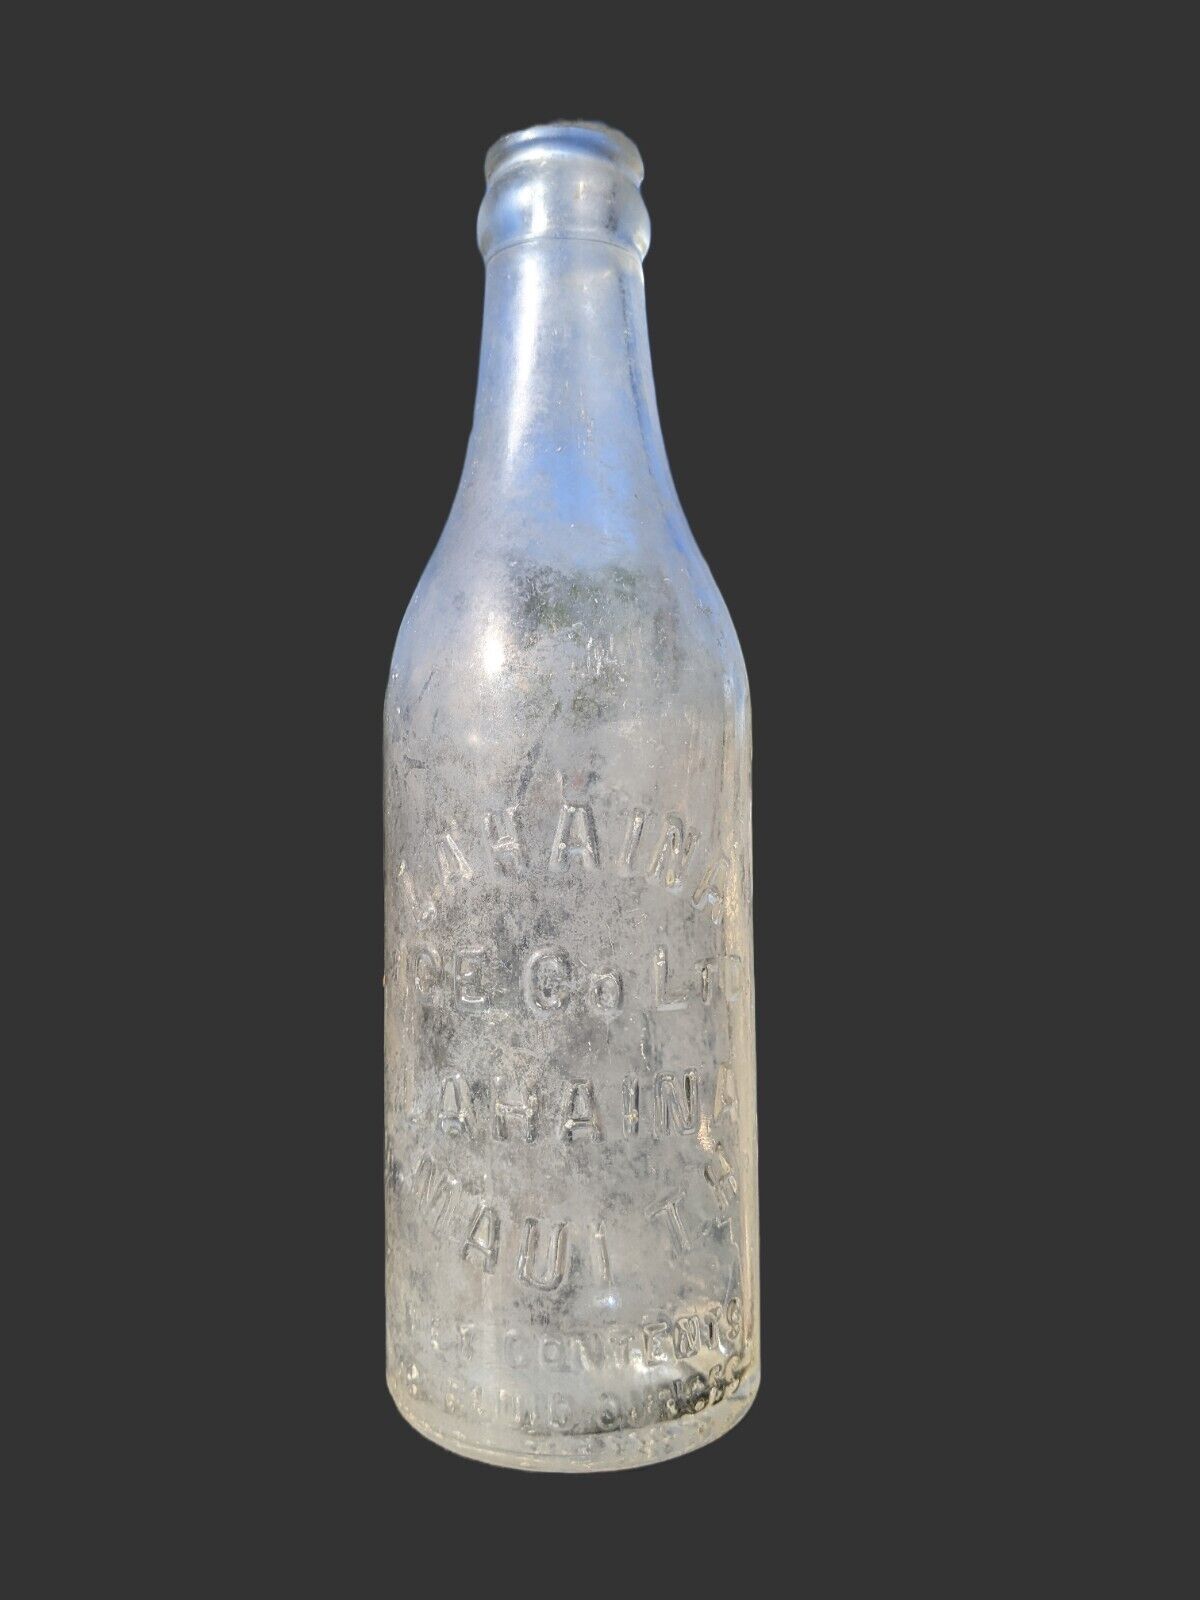 Vintage Lahaina Ice Co. Ltd. Maui Territory Hawaii Bottle